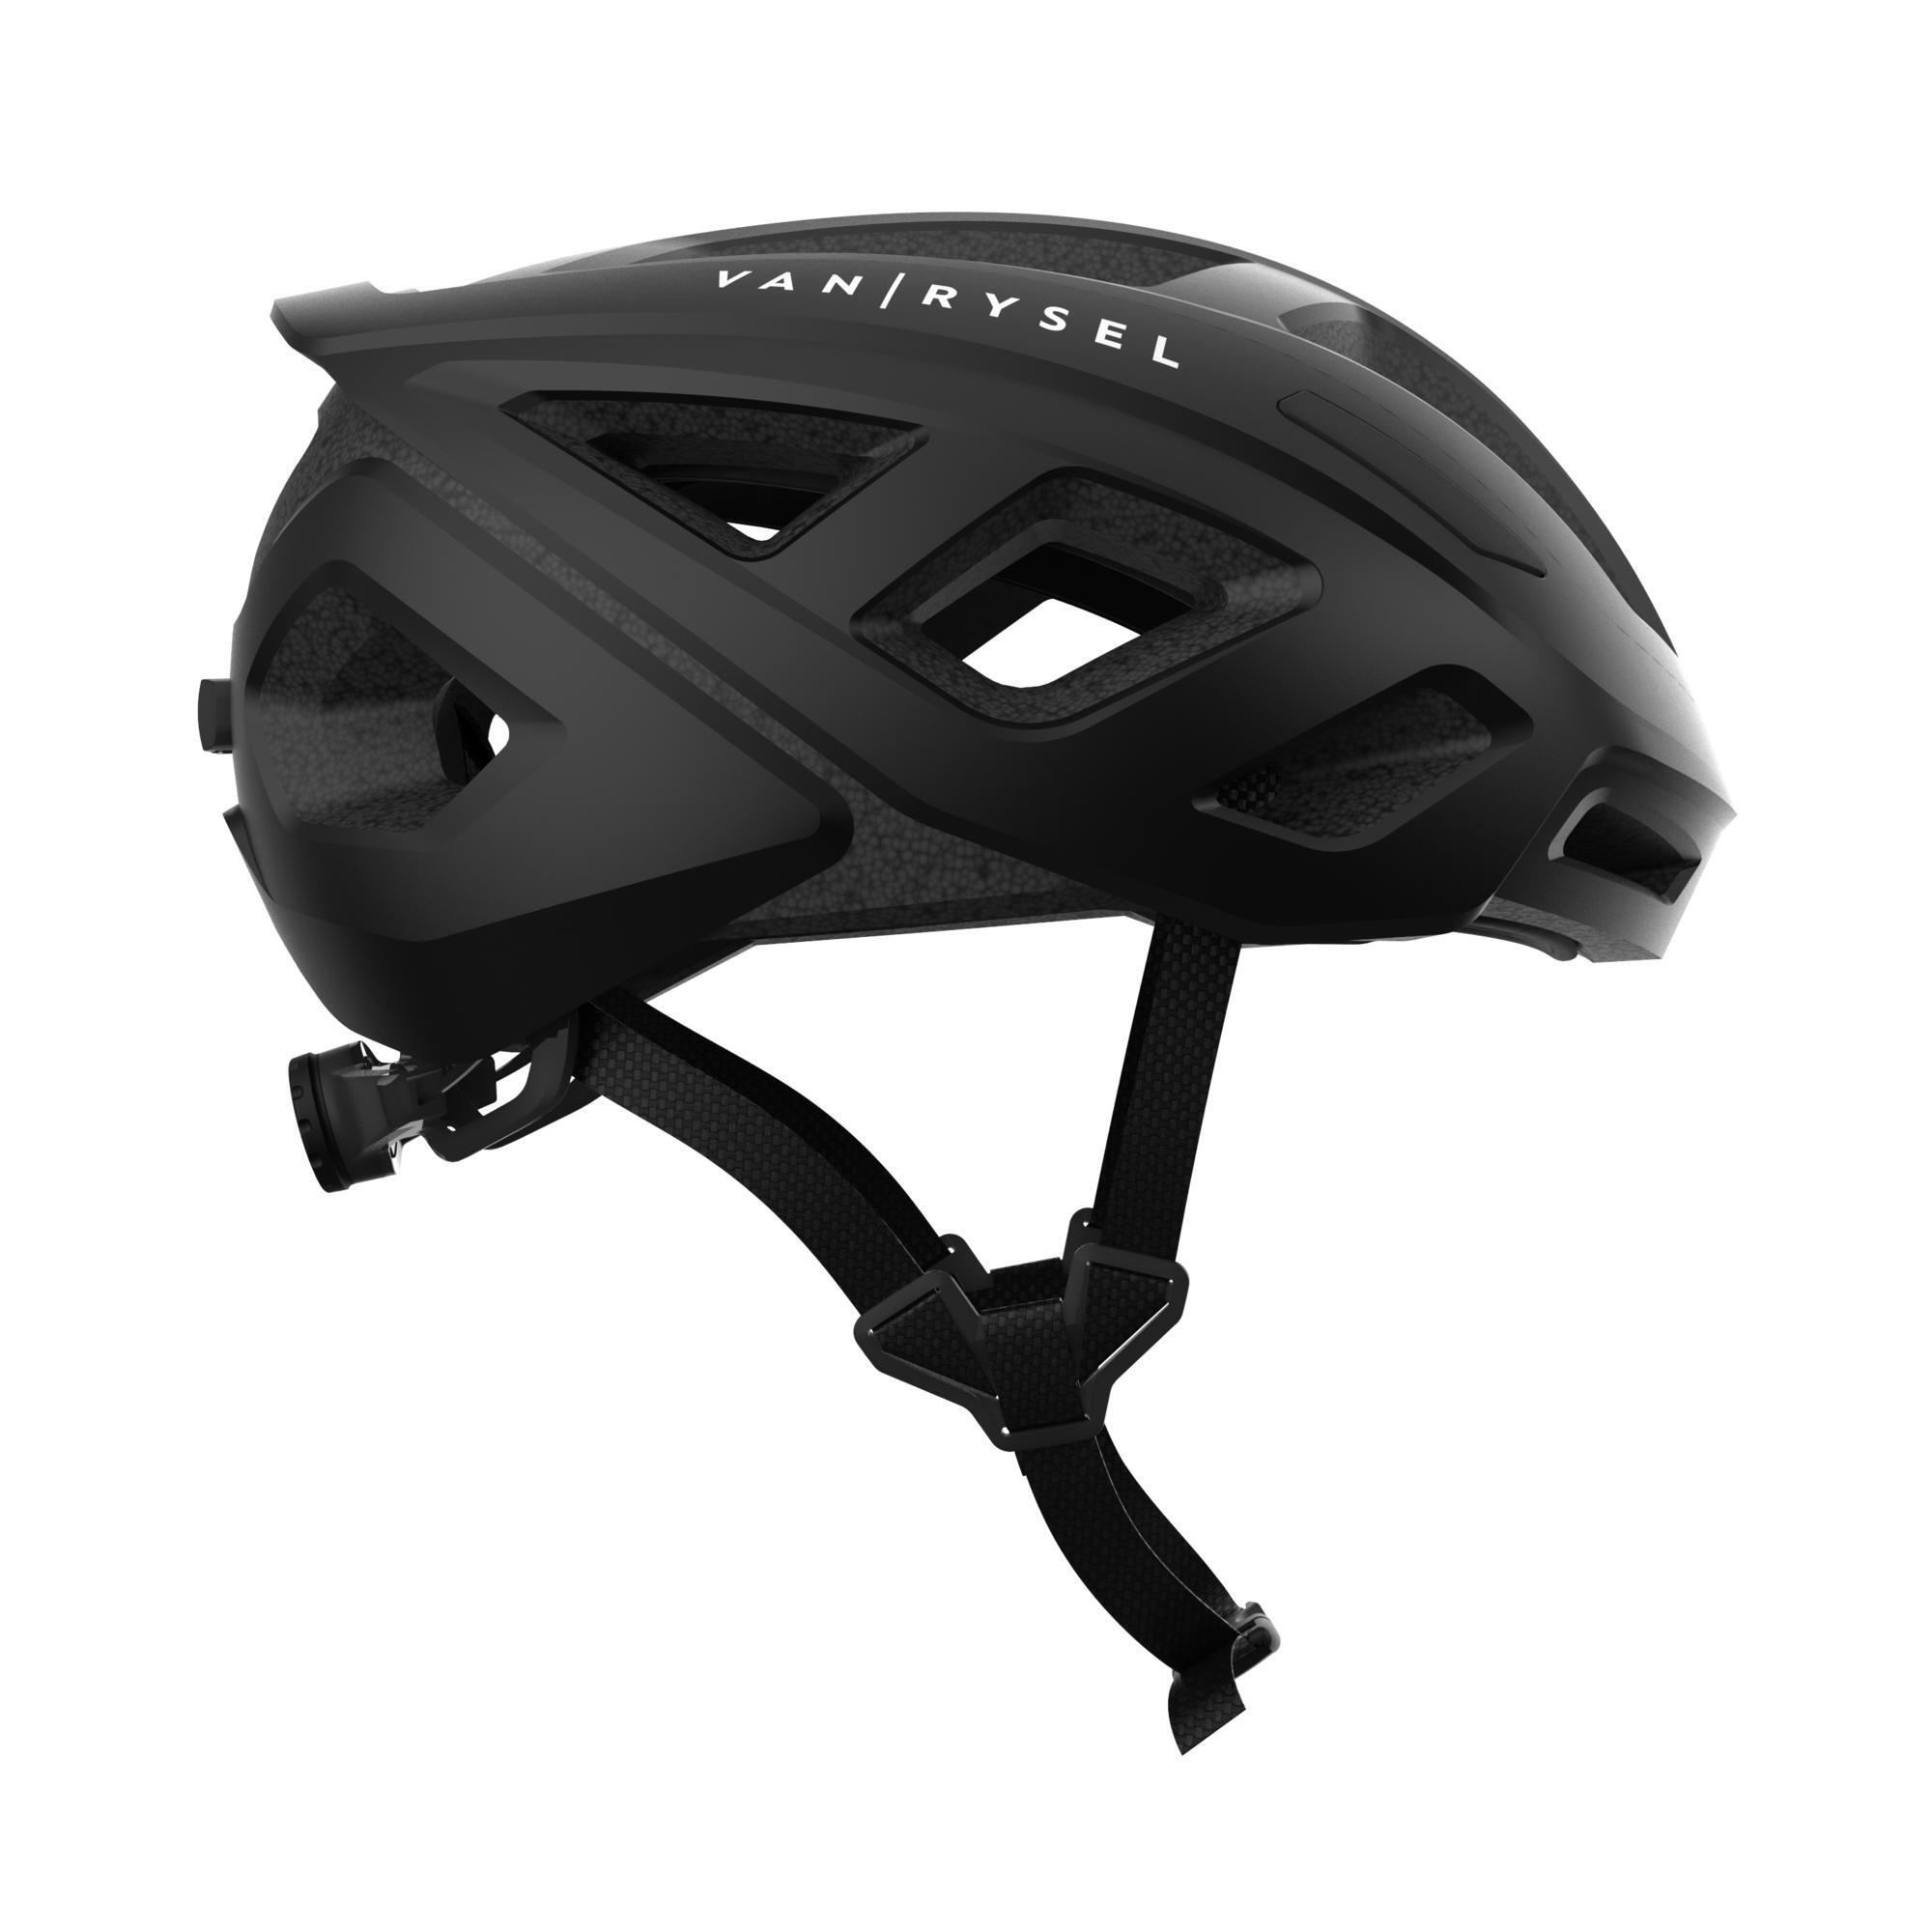 RoadR 500 Road Cycling Helmet - Black 4/6